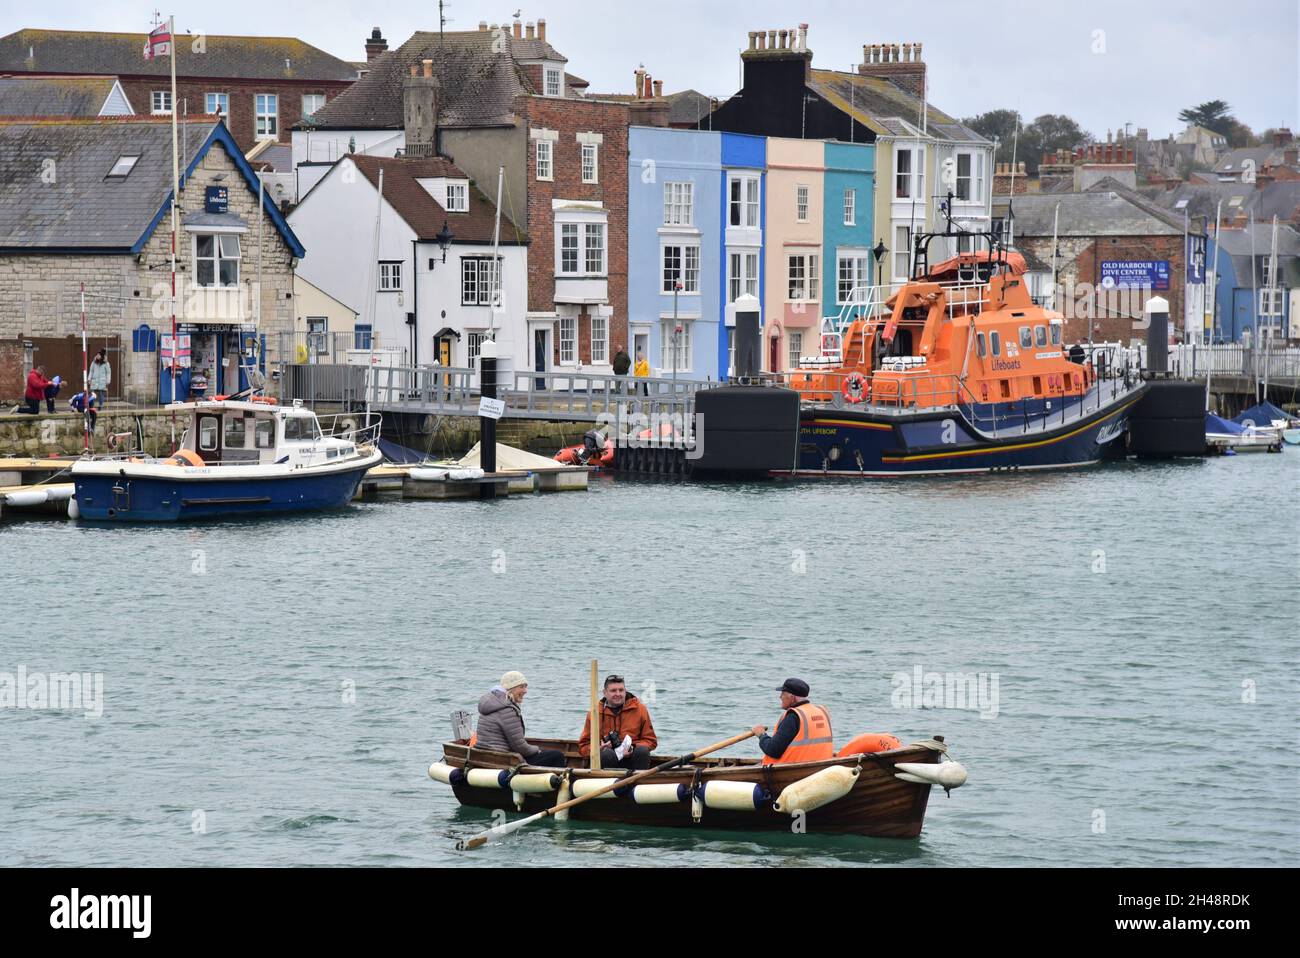 Weymouth eine Küstenstadt an der englischen Kanalküste, England, die drittgrößte Siedlung in Dorset. Bilder aufgenommen im Oktober 2021 Stockfoto